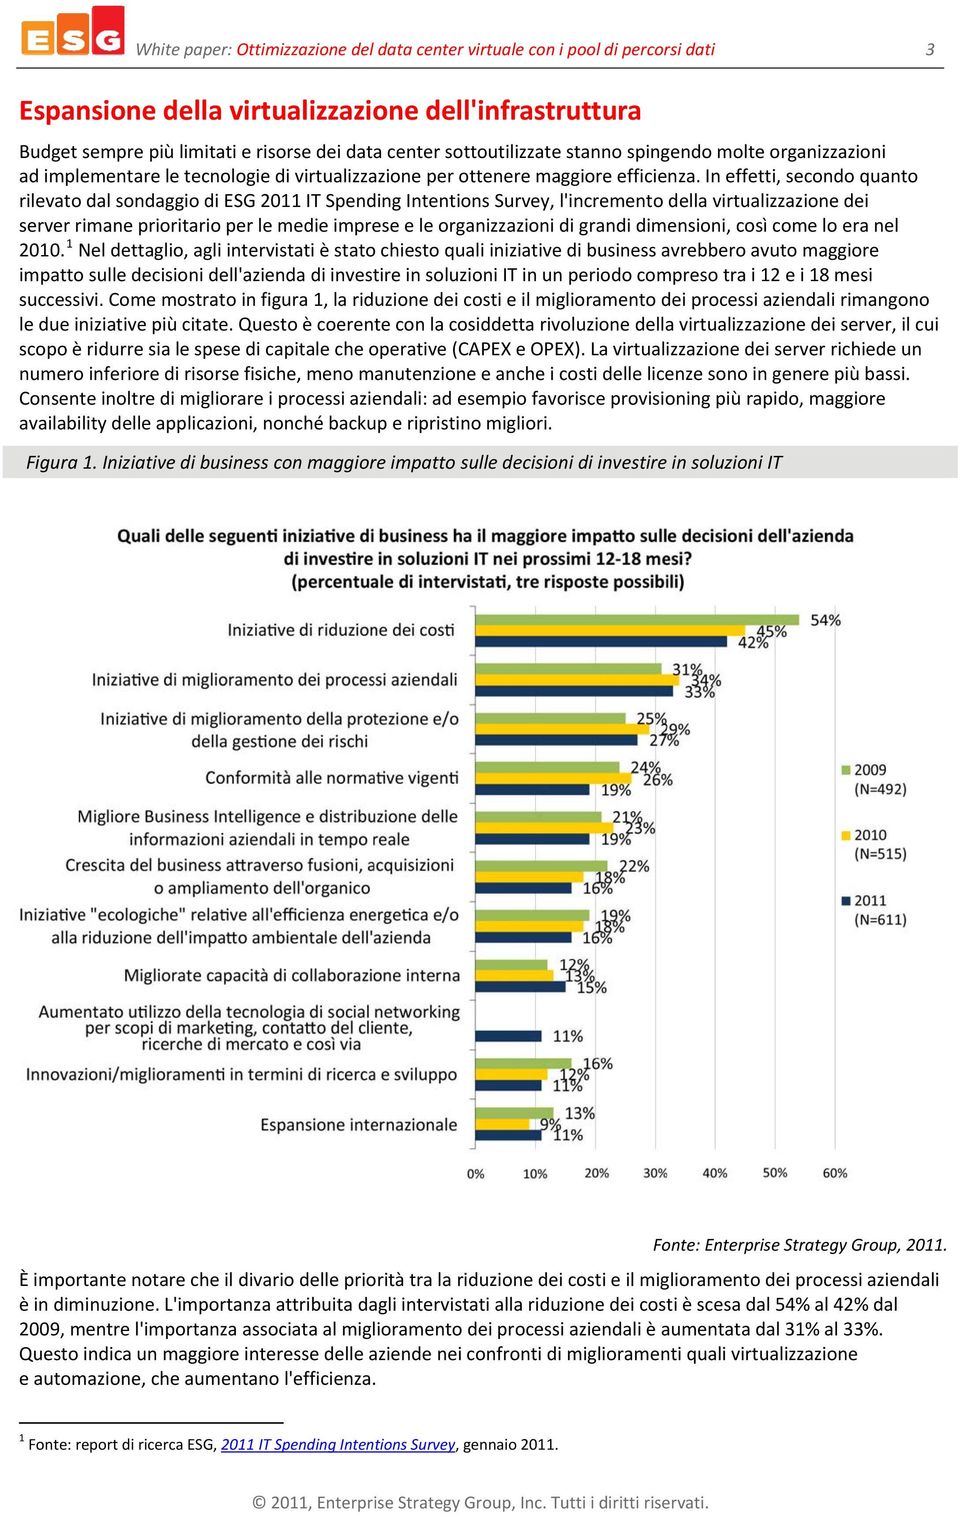 In effetti, secondo quanto rilevato dal sondaggio di ESG 2011 IT Spending Intentions Survey, l'incremento della virtualizzazione dei server rimane prioritario per le medie imprese e le organizzazioni